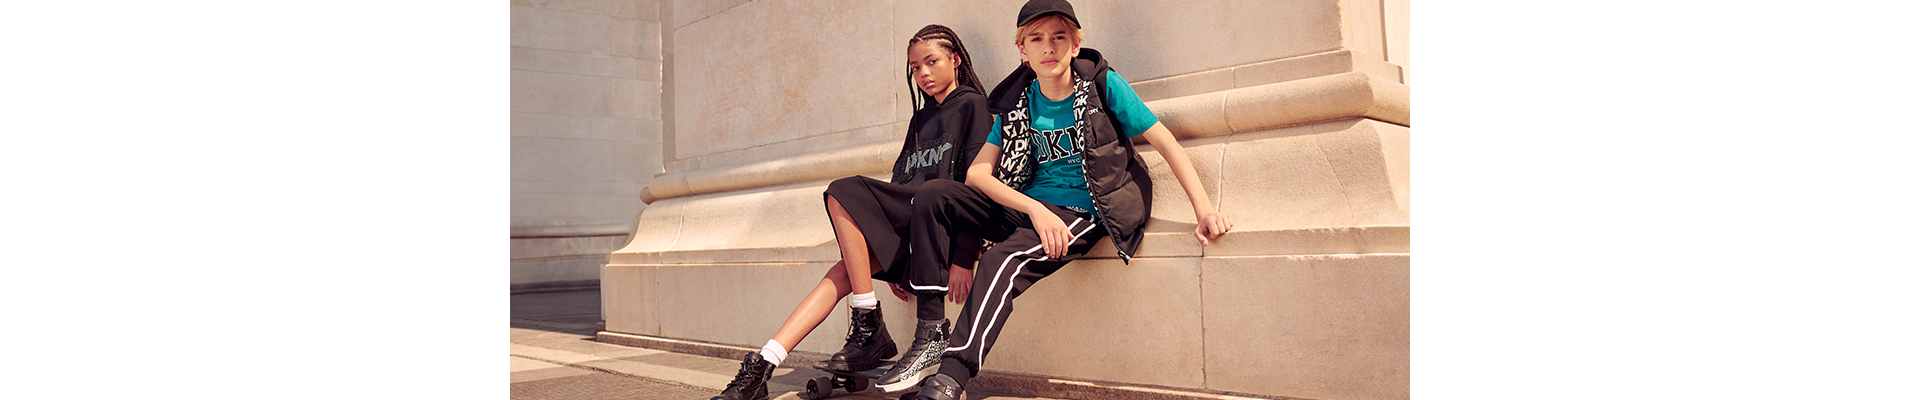 la marque de vêtement pour enfants DKNY sur Kids around